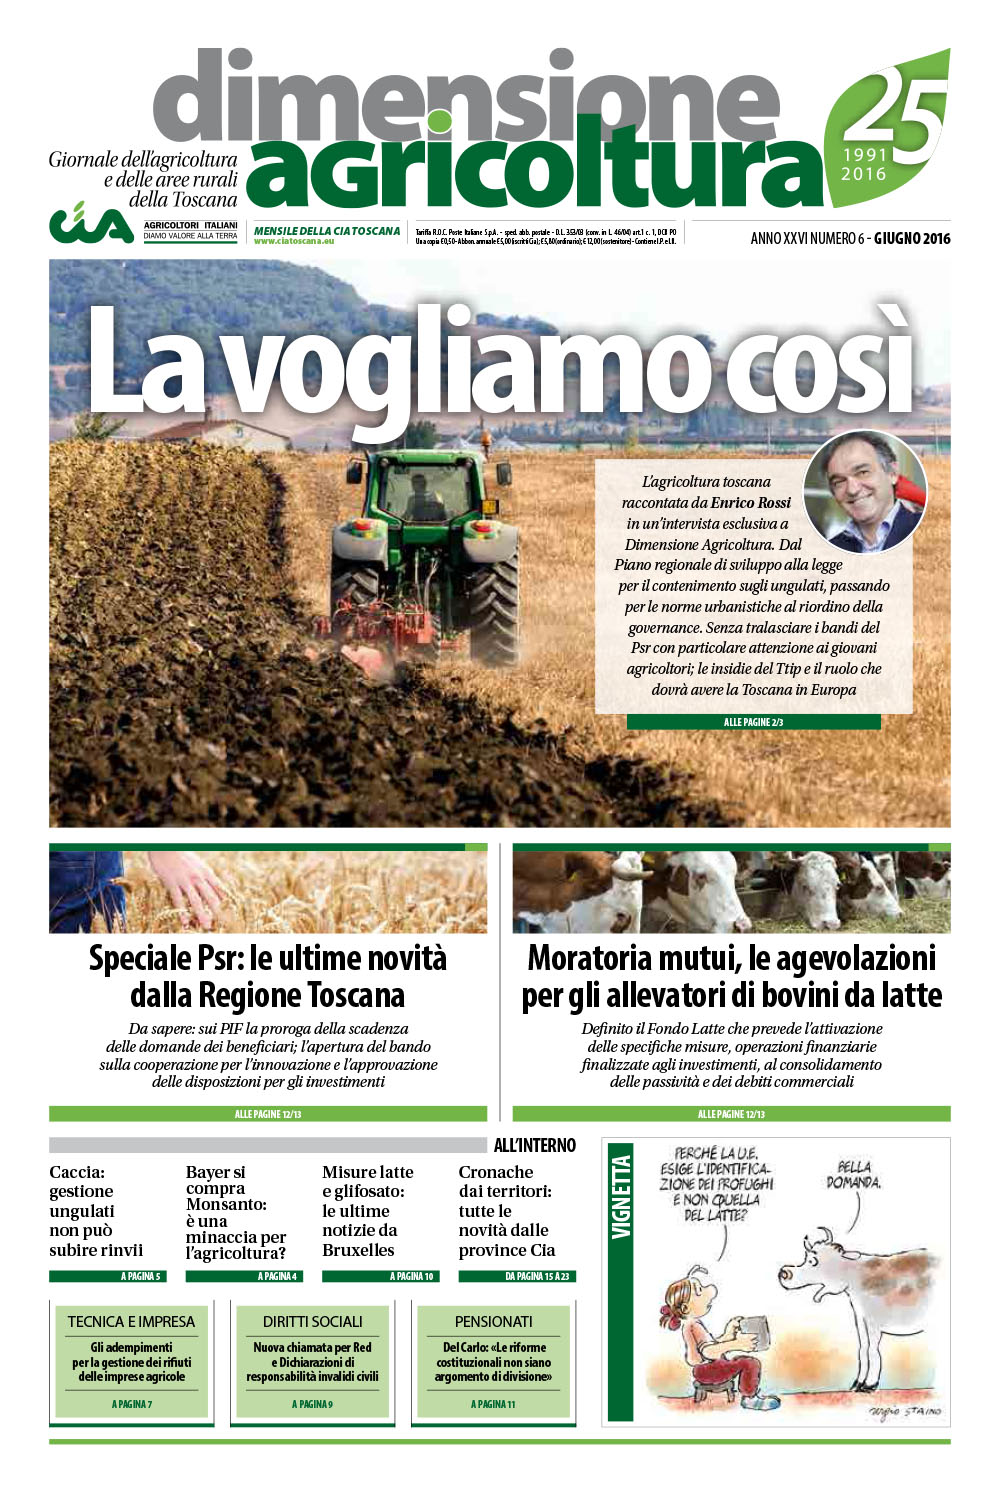 L’agricoltura che vogliamo, secondo Enrico Rossi nel nuovo numero di Dimensione Agricoltura